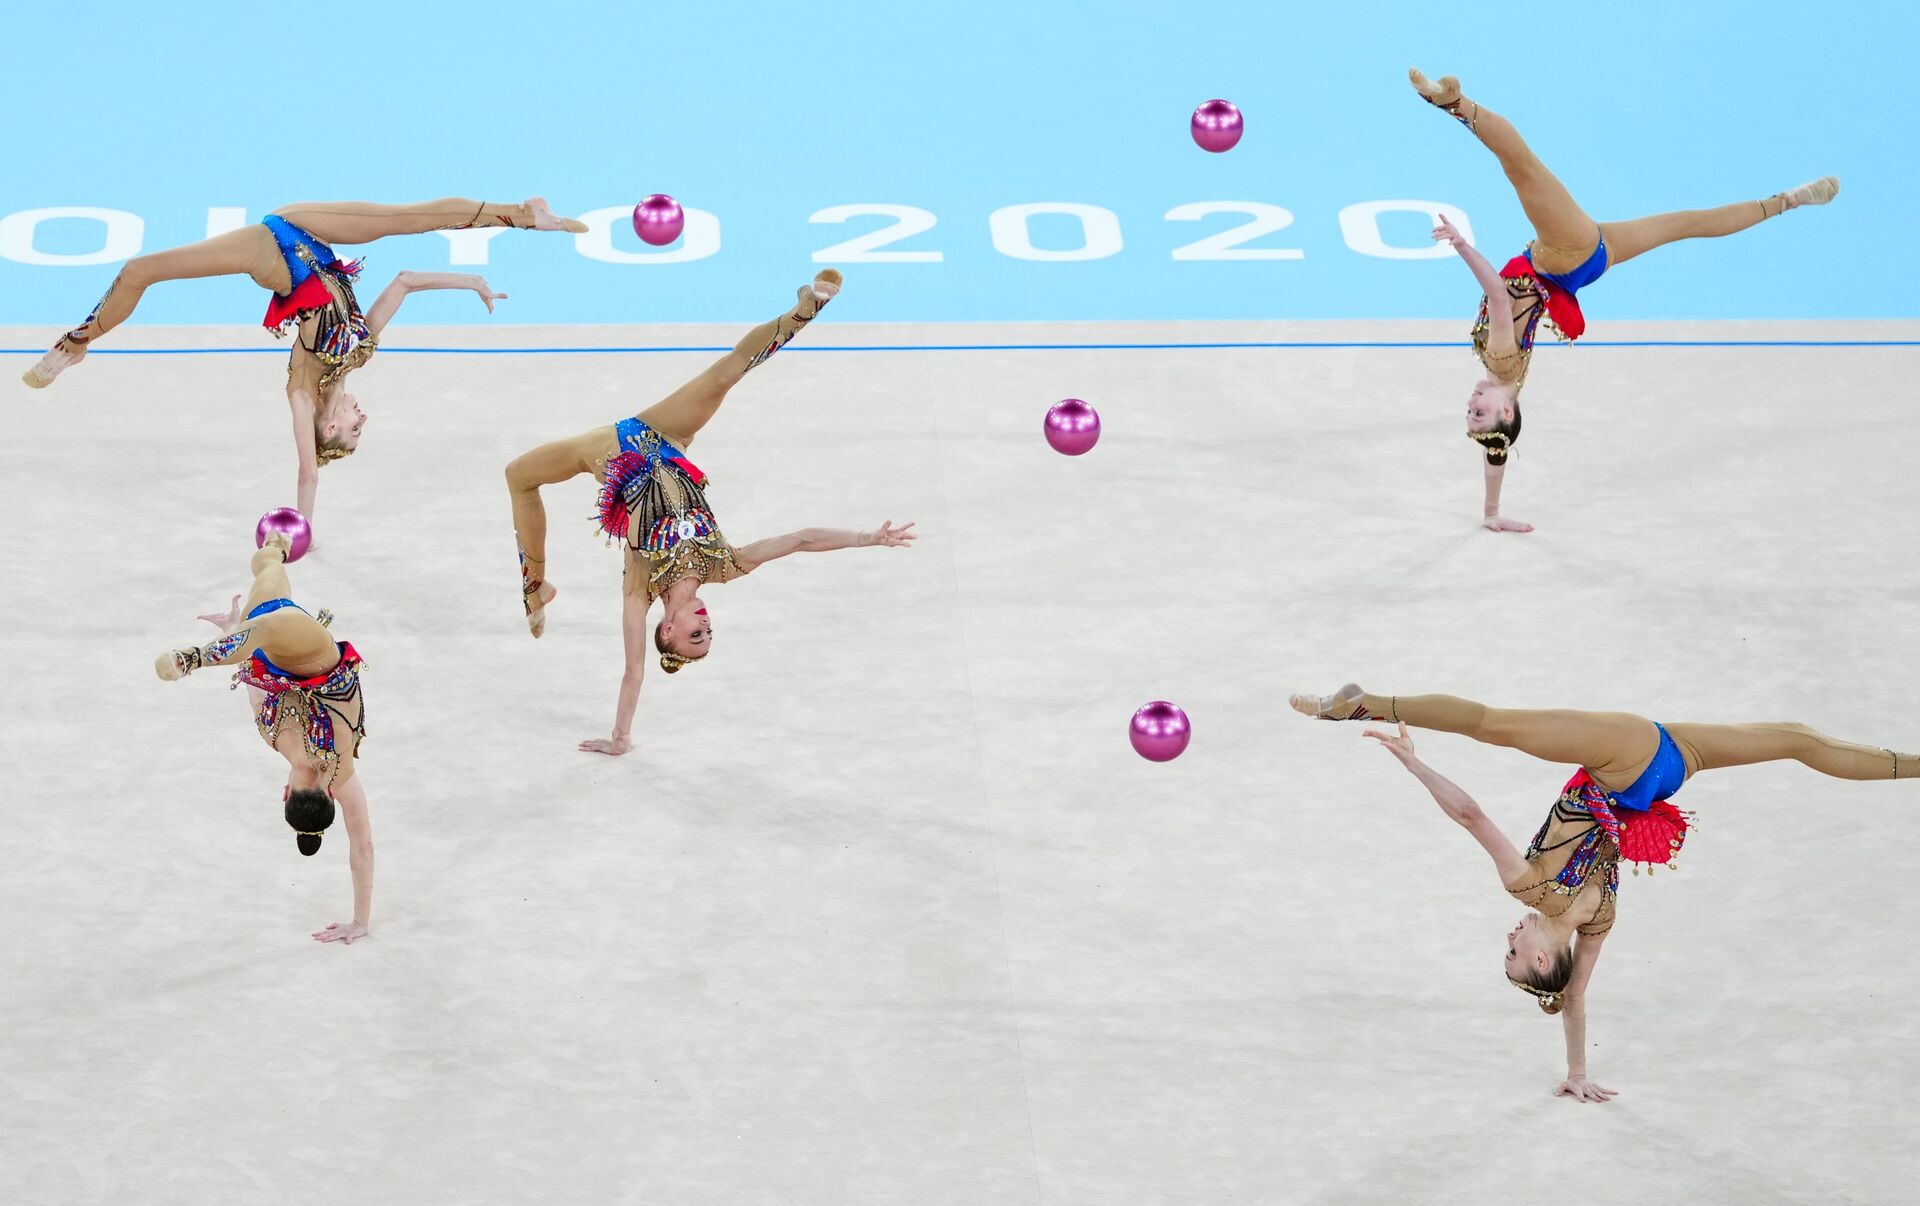 俄罗斯队获得世界艺术体操锦标赛9枚金牌中的8枚 - 2019年9月22日, 俄罗斯卫星通讯社